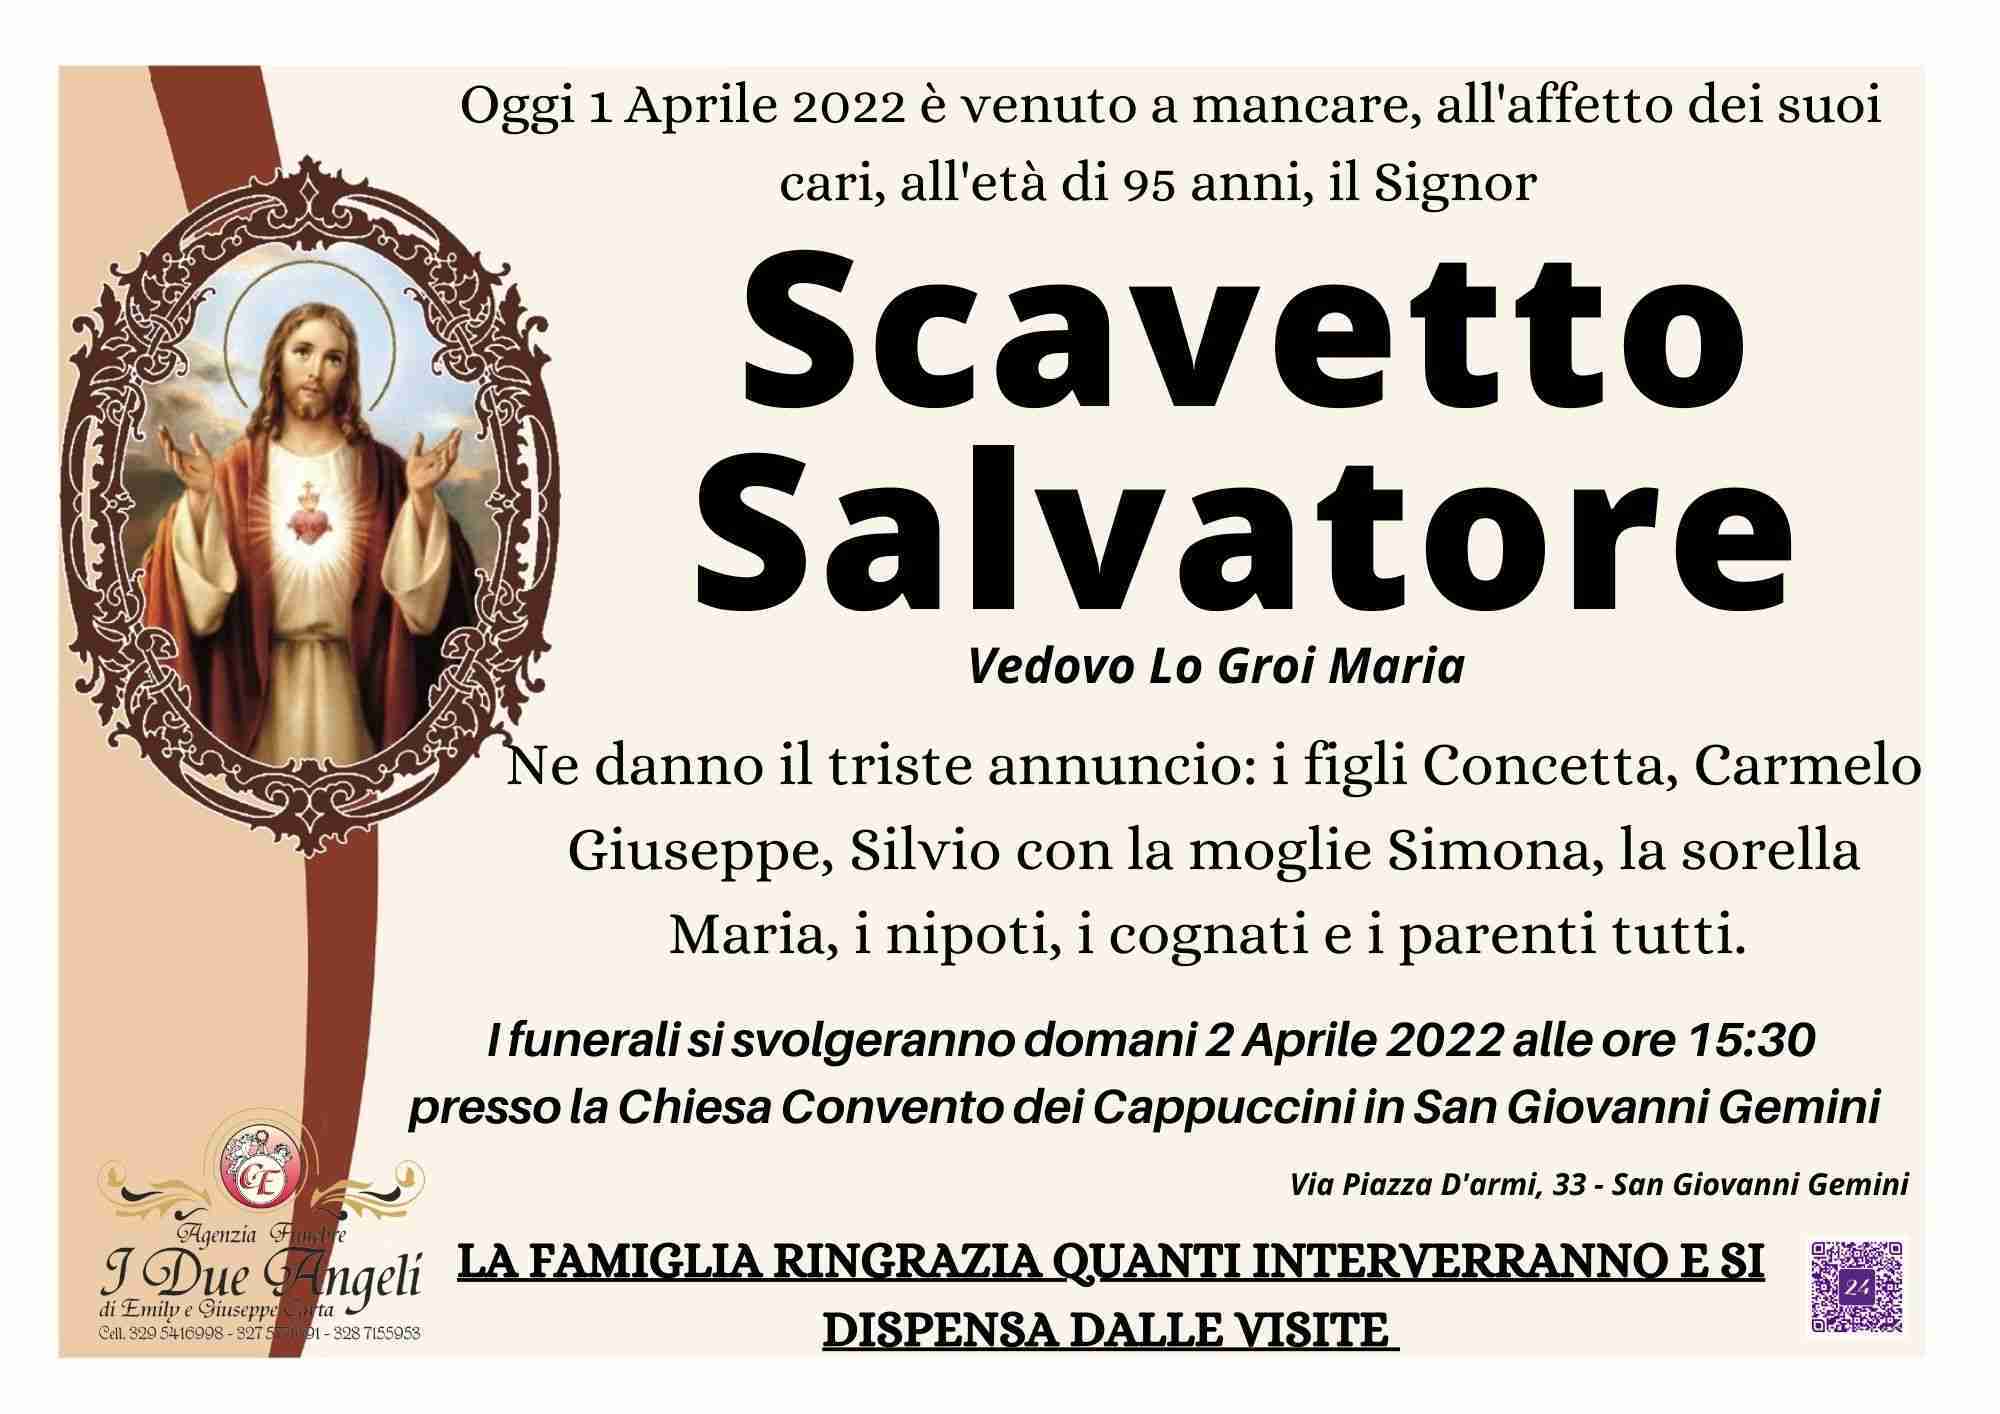 Salvatore Scavetto